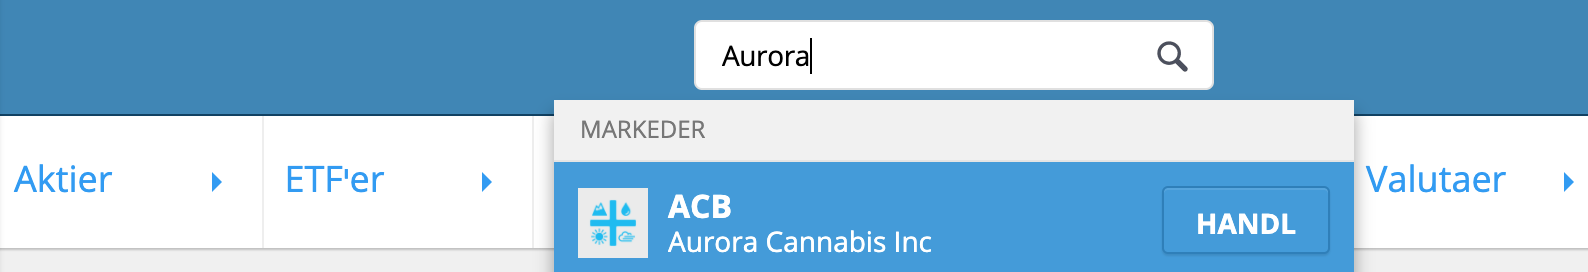 Søg efter Aurora aktier på eToro.